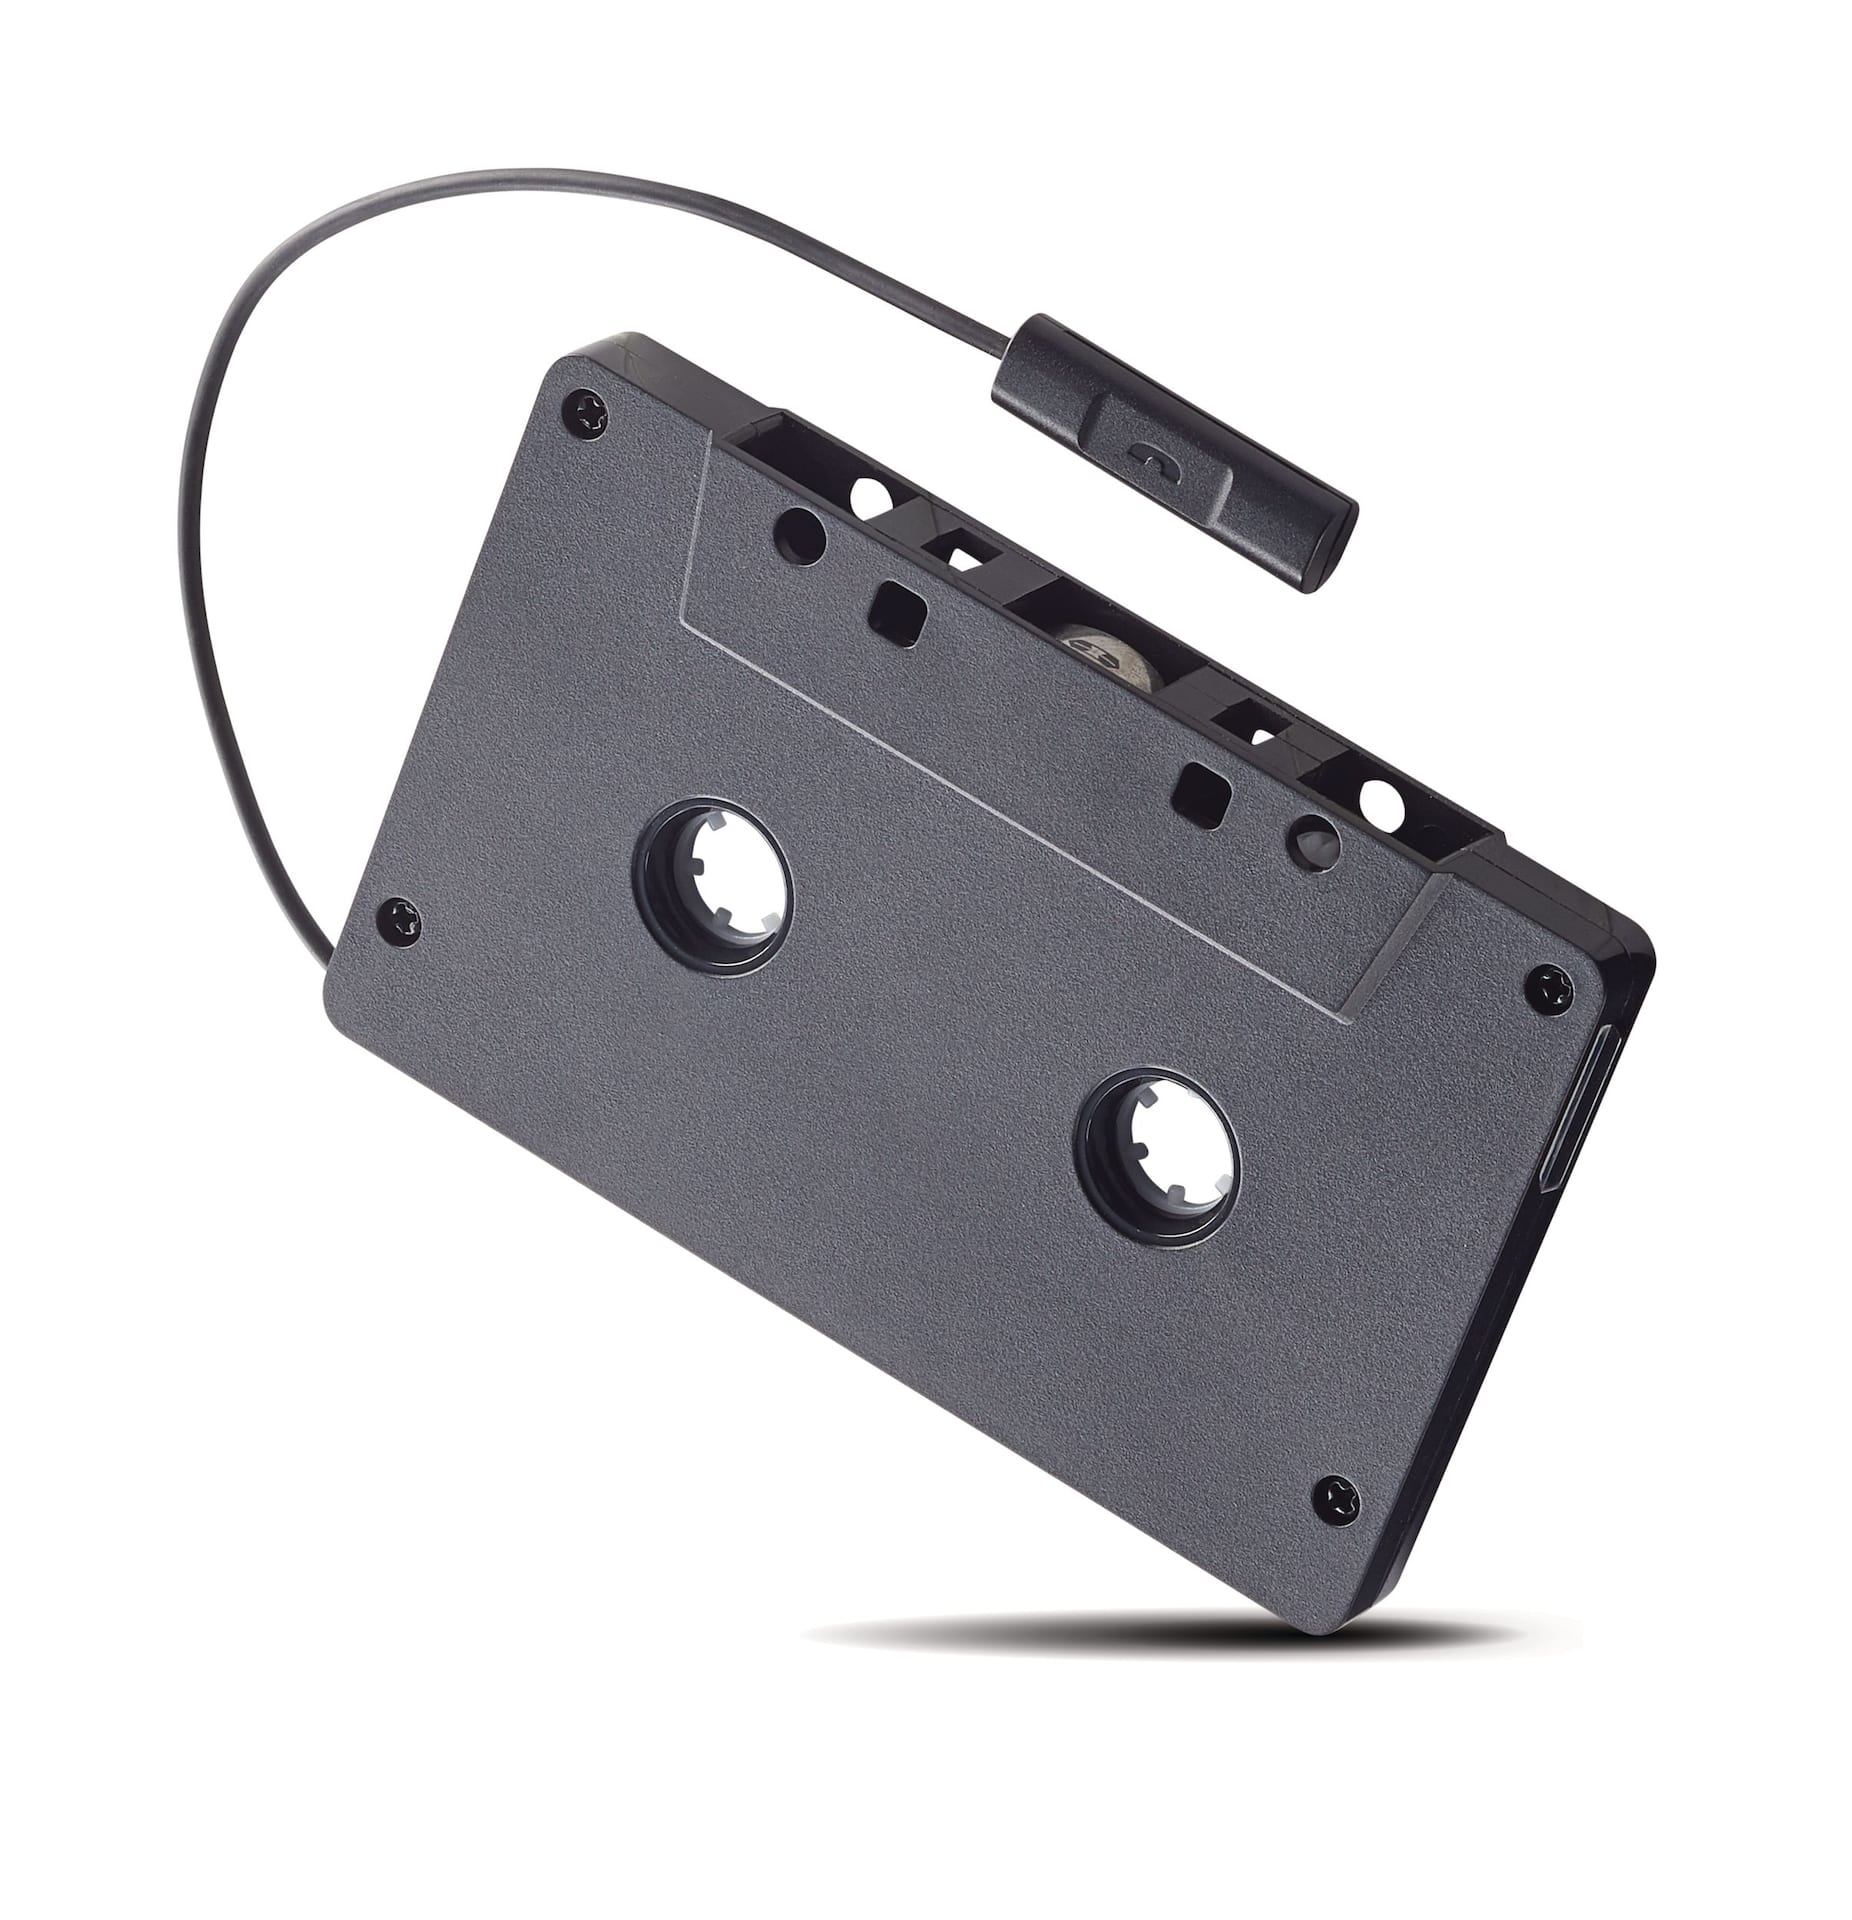 Adaptateur auxiliaire pour cassette audio pour l'auto de Bluehive